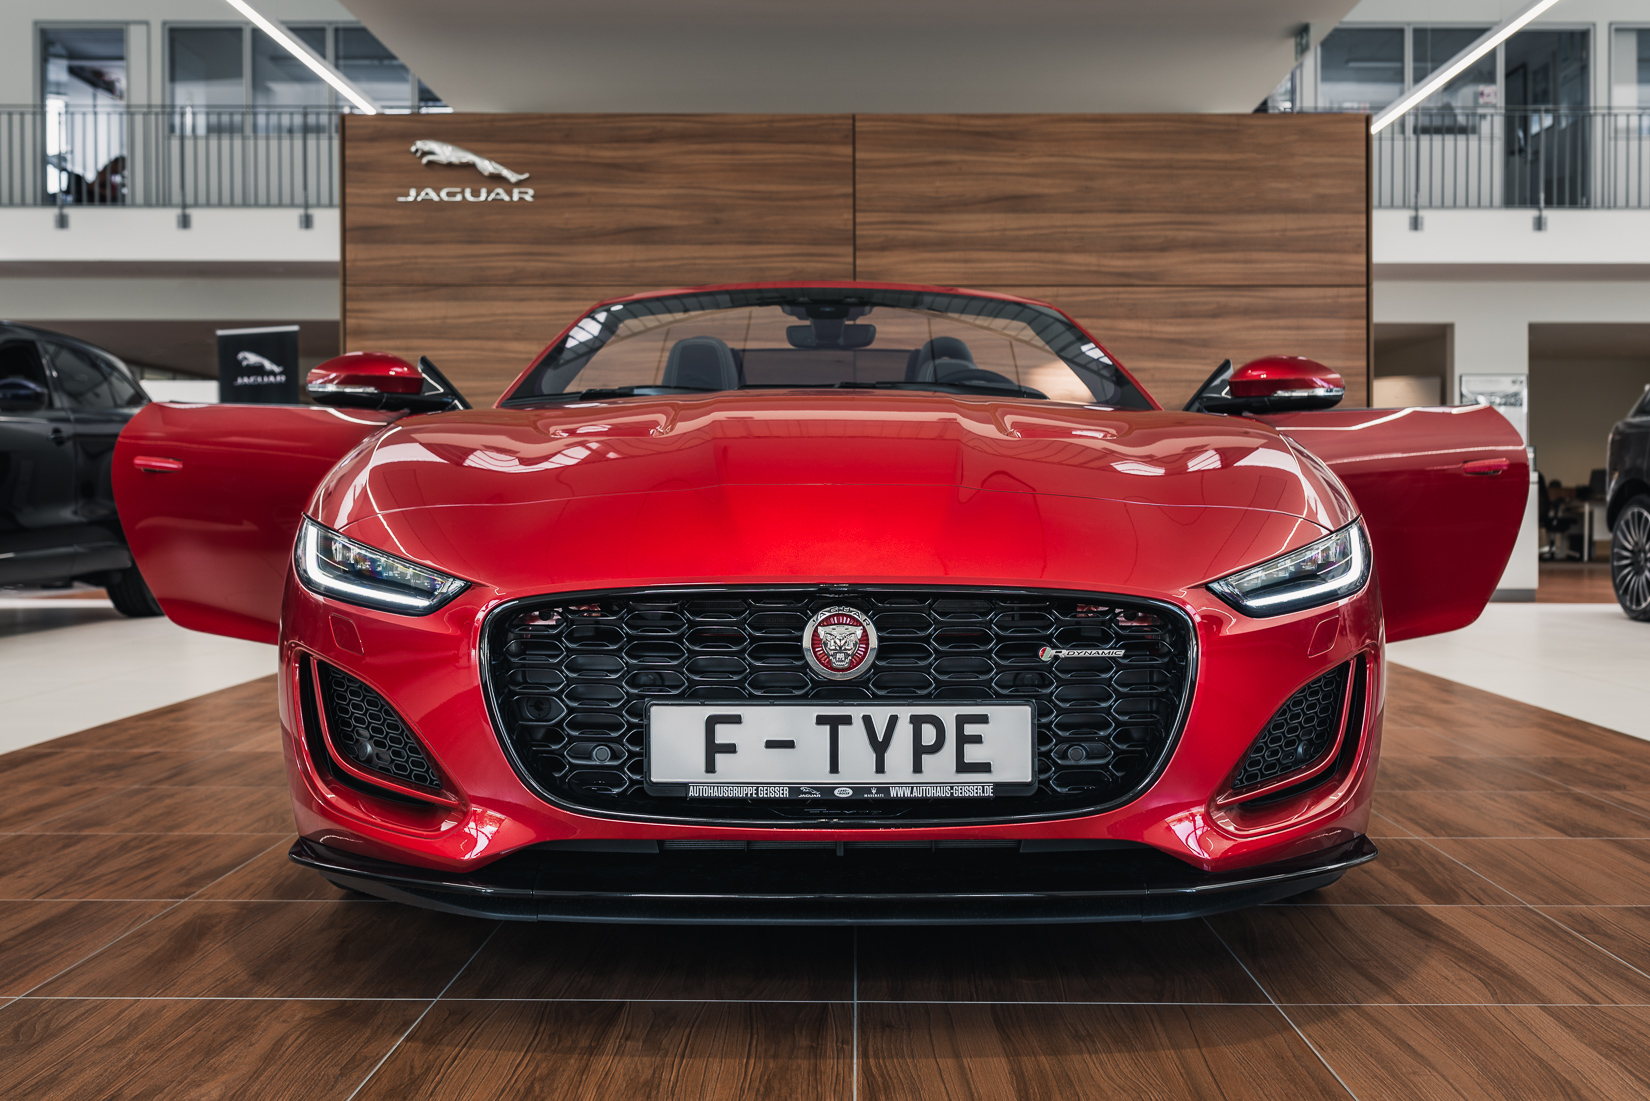 Das Sportwagenmodell F-Type von Jaguar in der Cabrio-Variante wurde hier frontal vor der Holzoptikwand im Showroom des Autohauses fotografiert. Im Fokus stehen ganz klar der sportliche Look und das Scheinwerfer-Design des Autos. Die Lackfarbe ist Firenze Red.